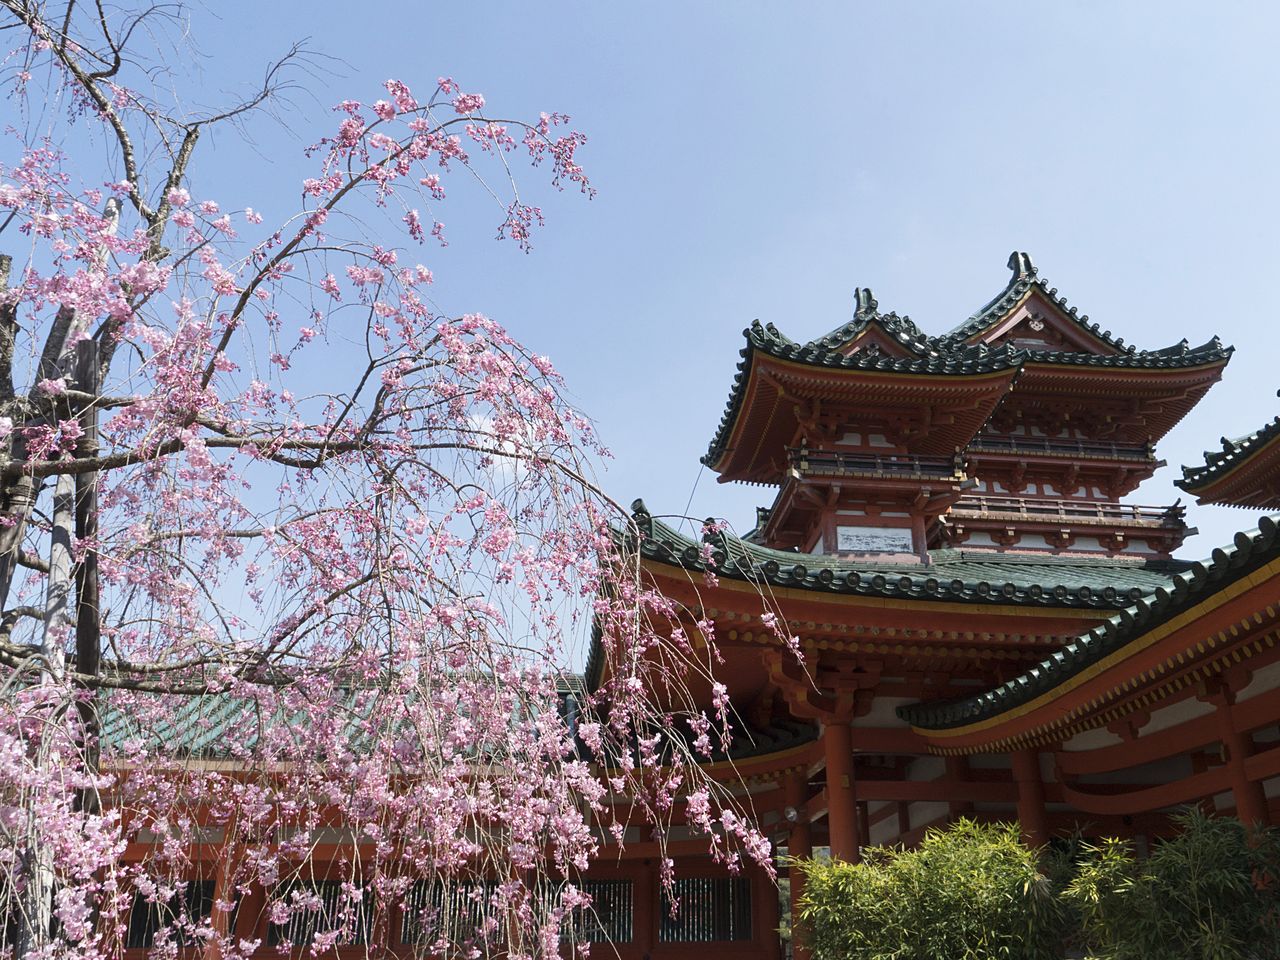 神苑入口处可以看到樱花点缀下的国家重要文化遗产白虎楼